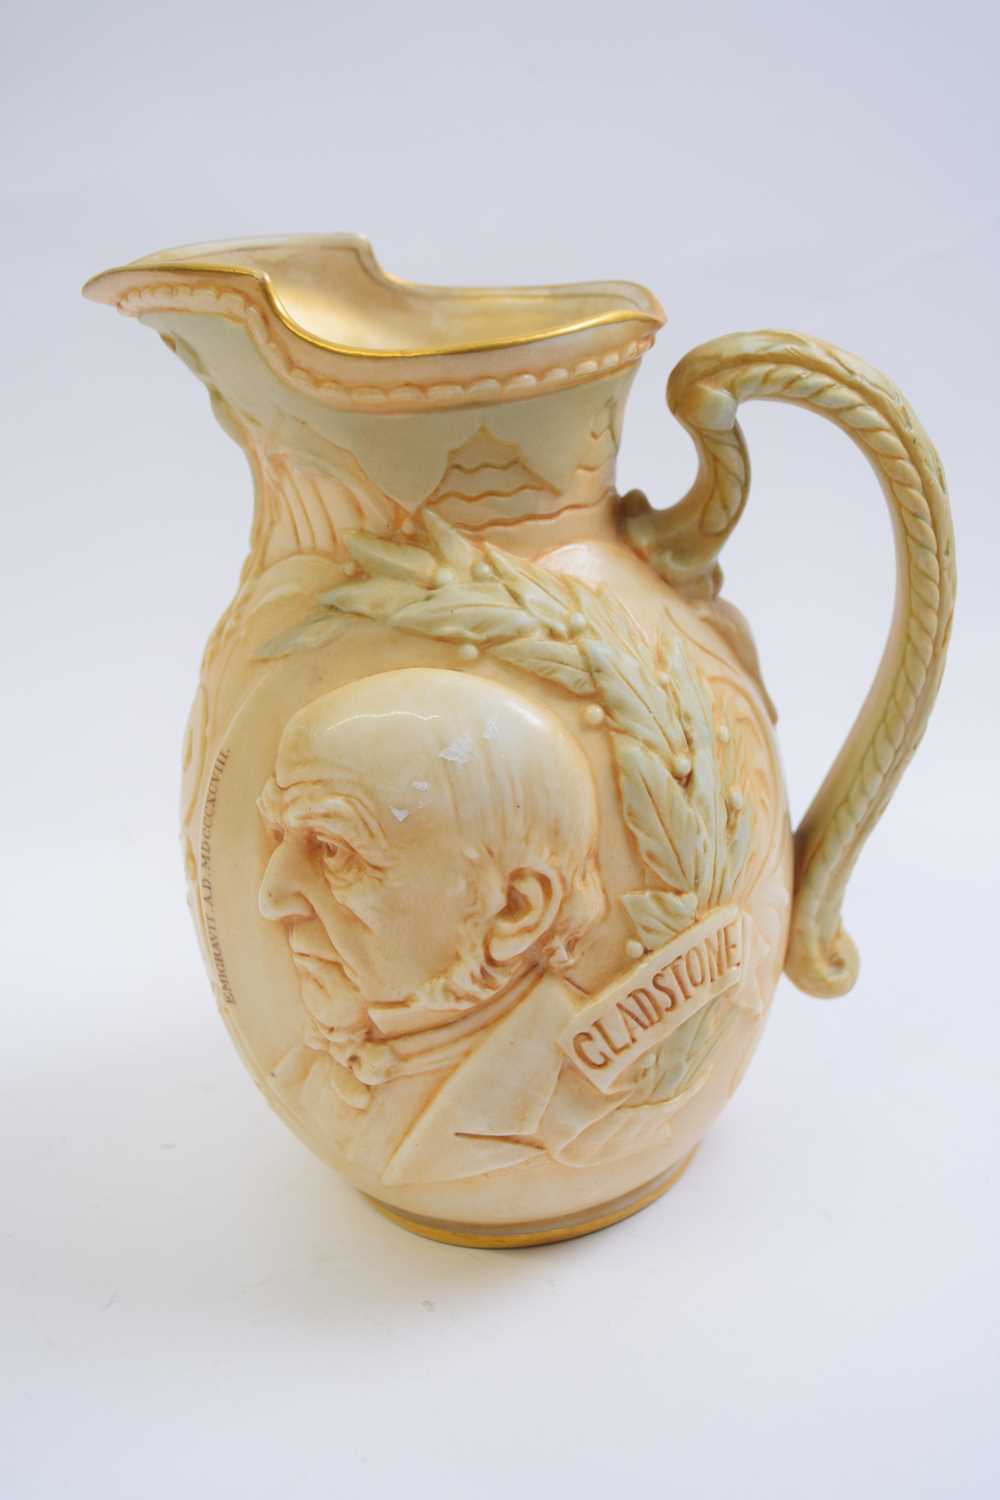 Doulton Burslam mug on ivory ground of Gladstone, 18cm high - Image 2 of 4